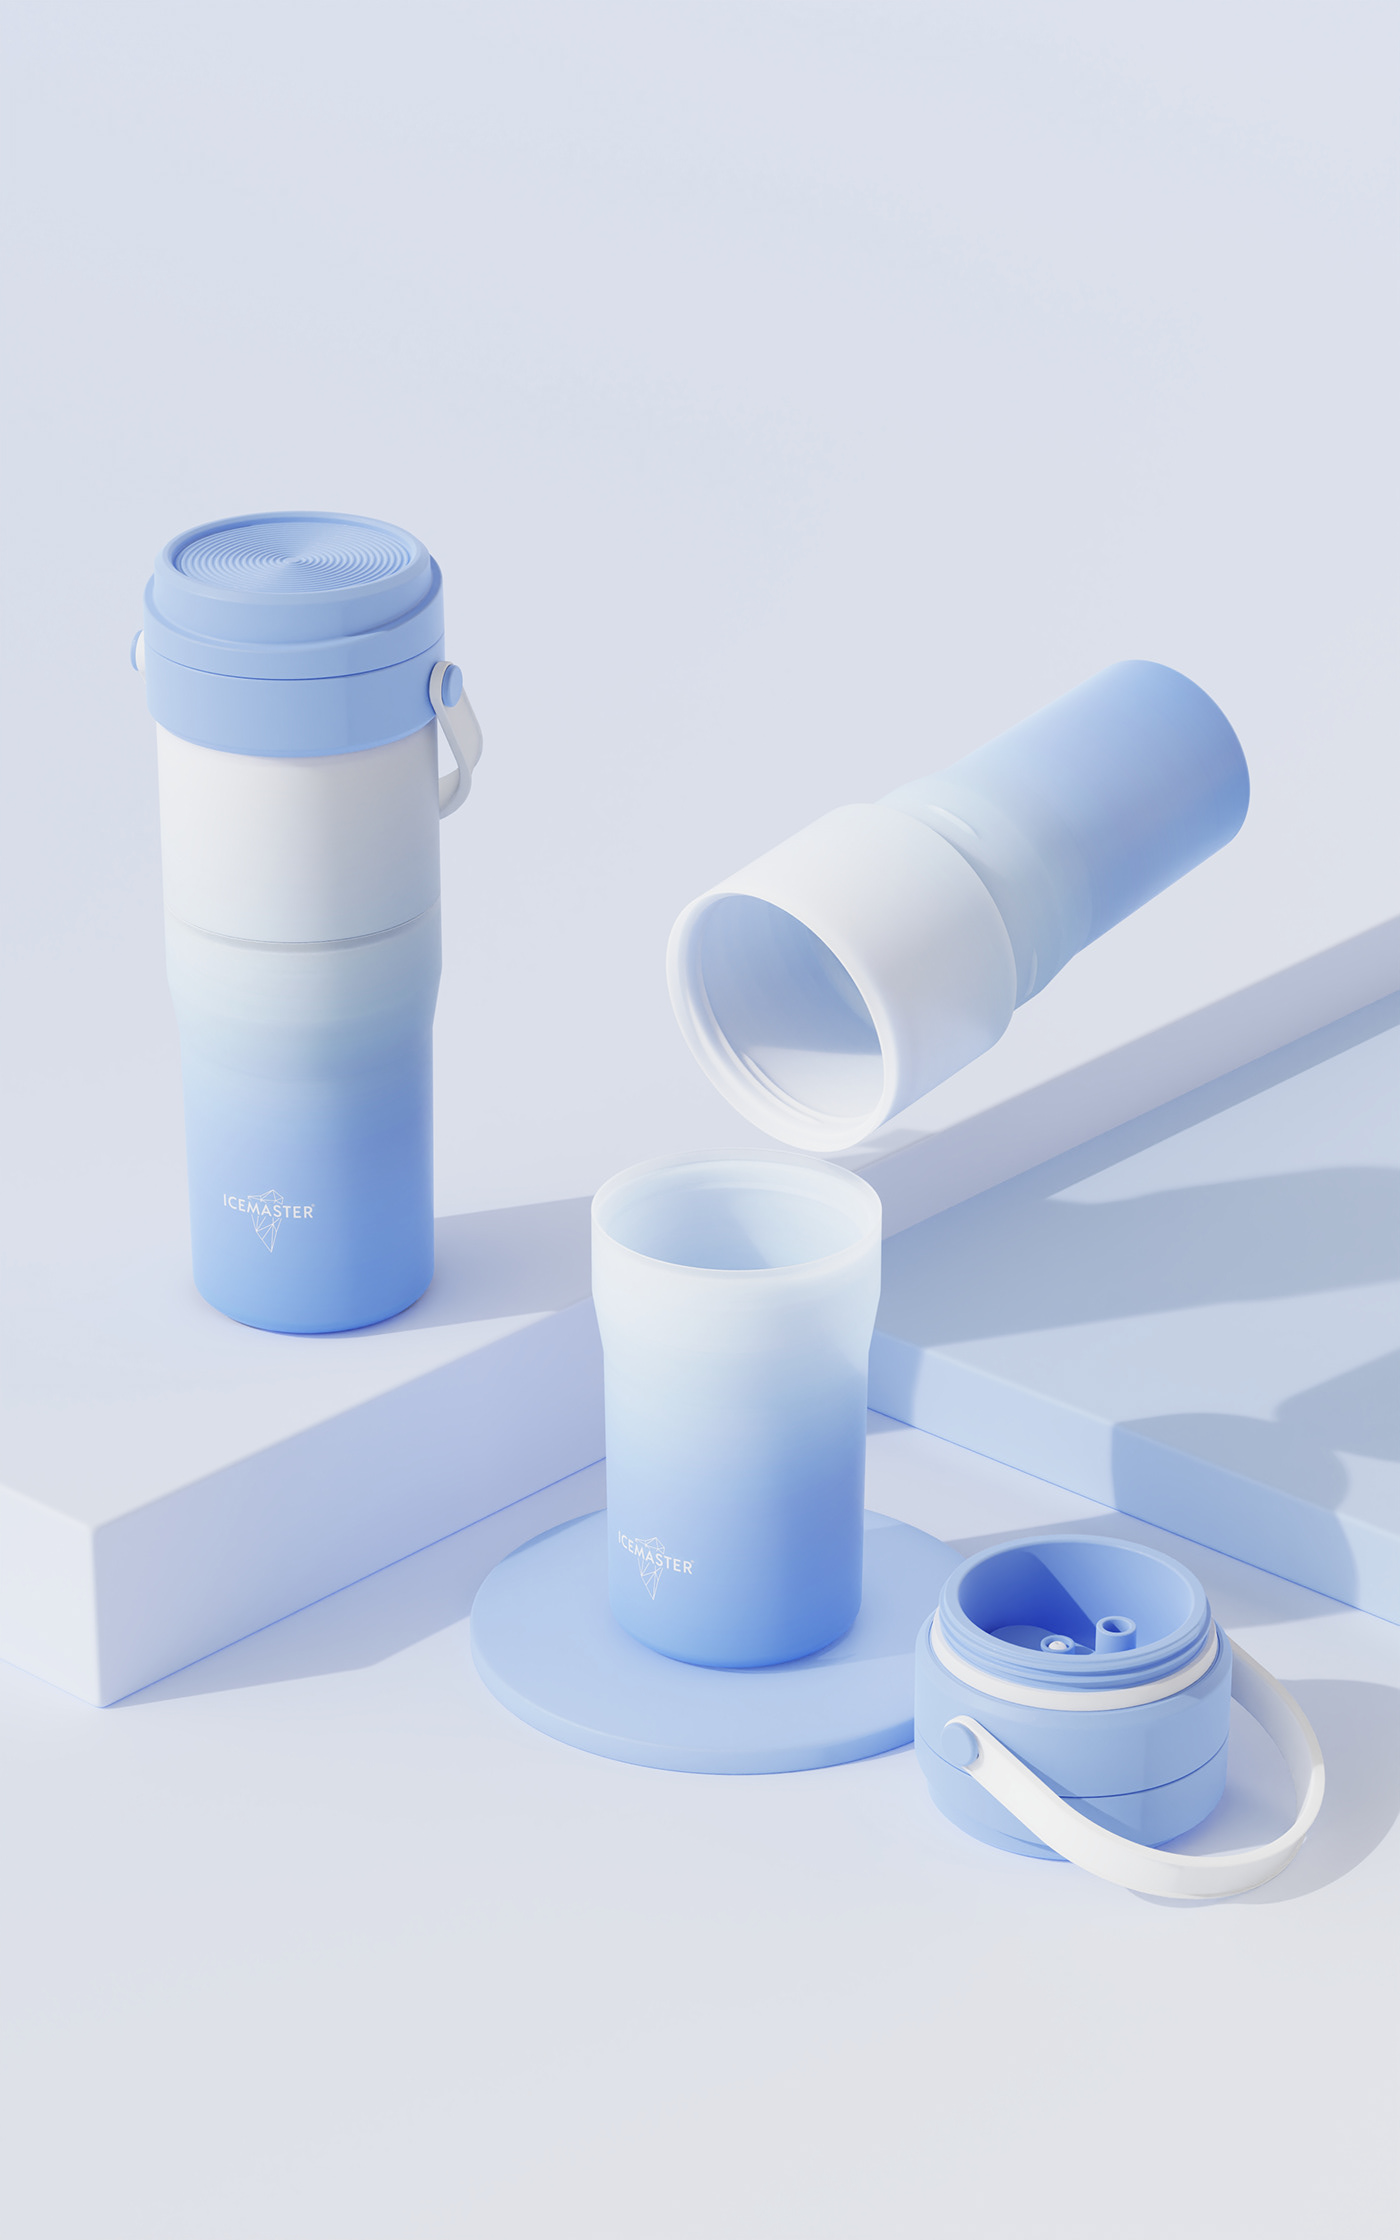 保温杯 水杯 产品设计 product design  Water cup